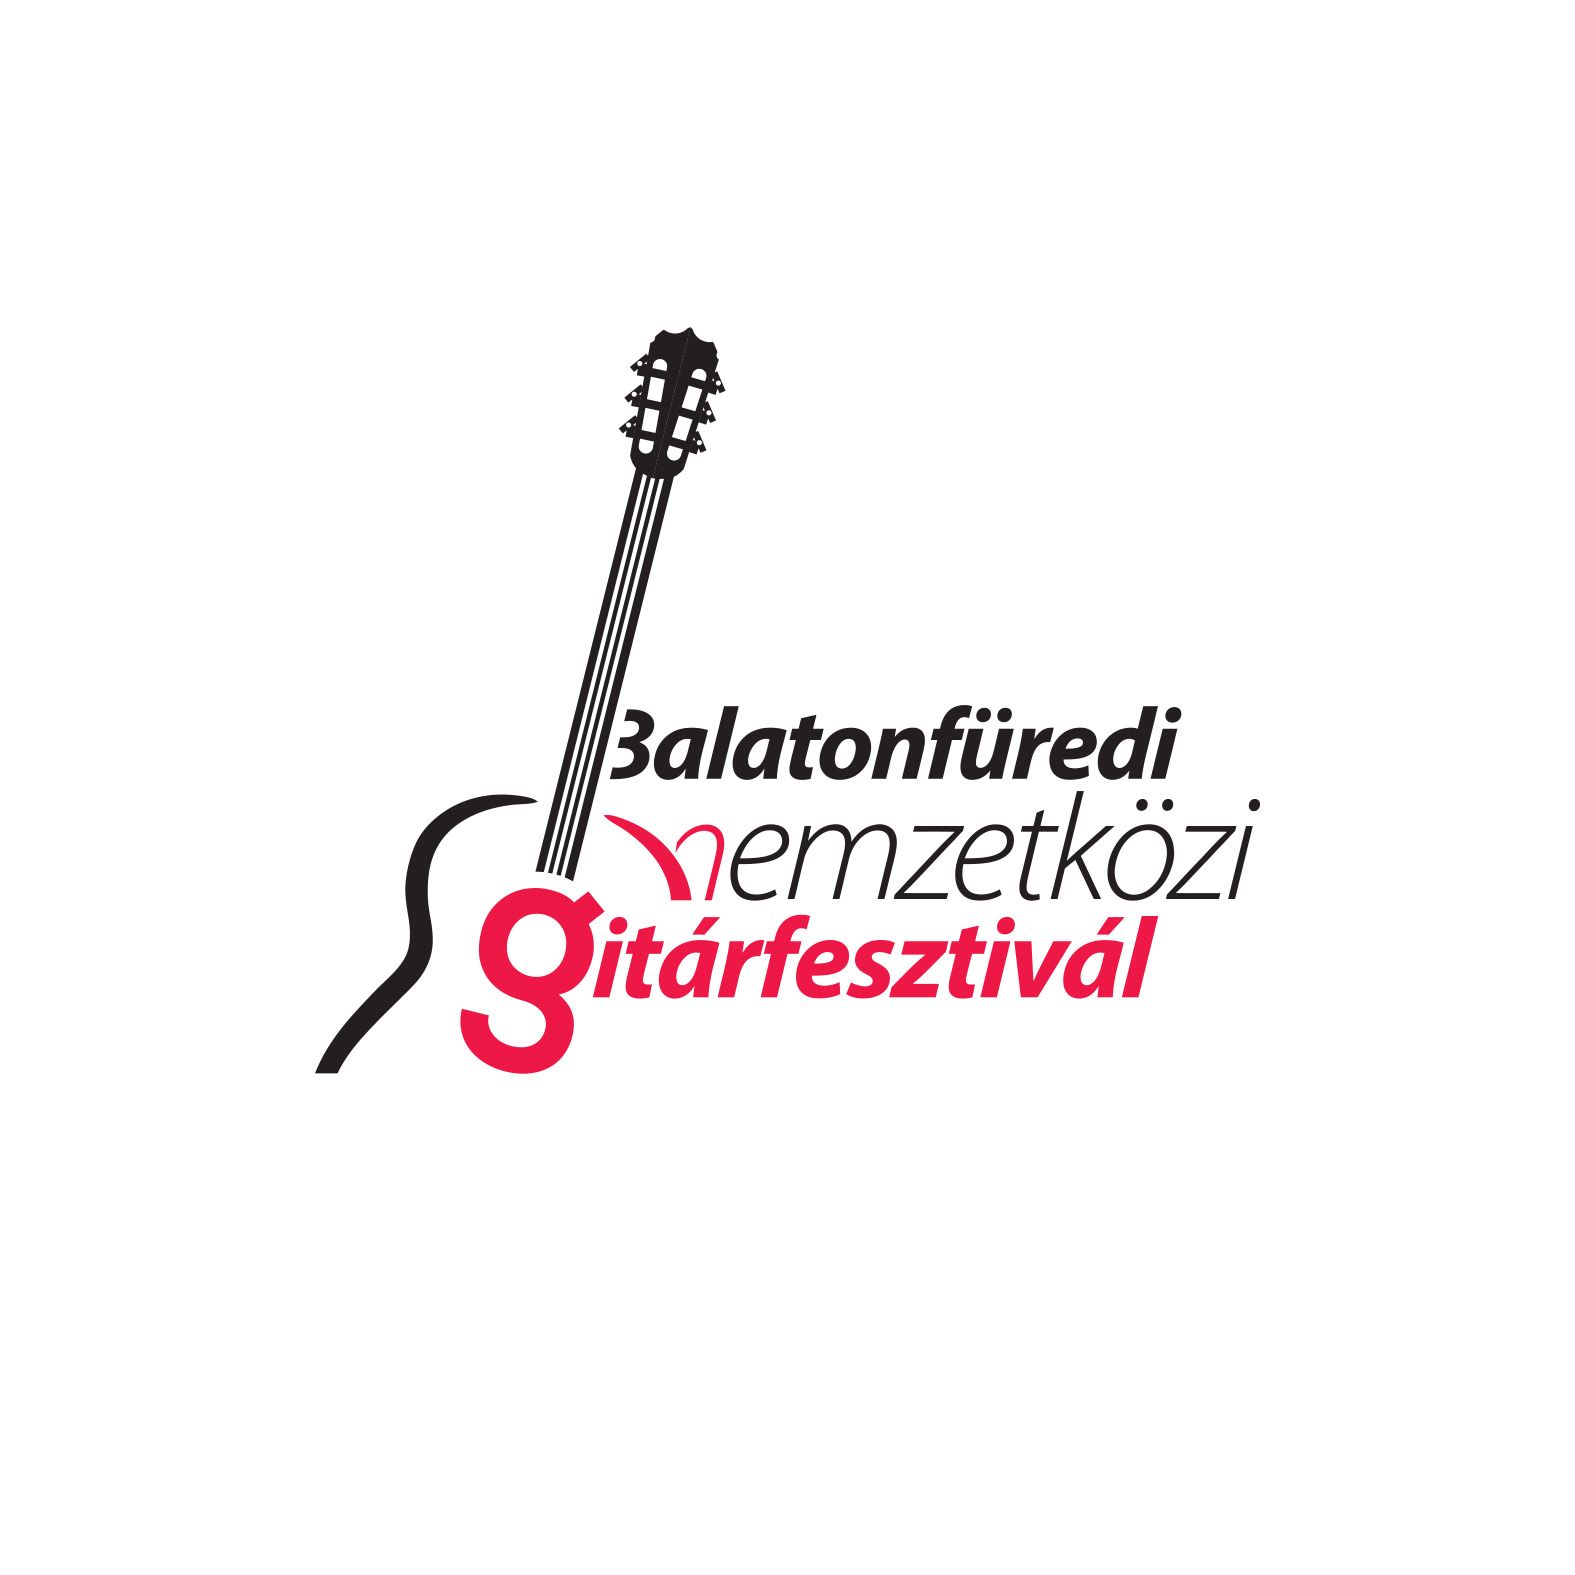 Balatonfüredi Nemzetközi Gitárfesztivál Alapítvány